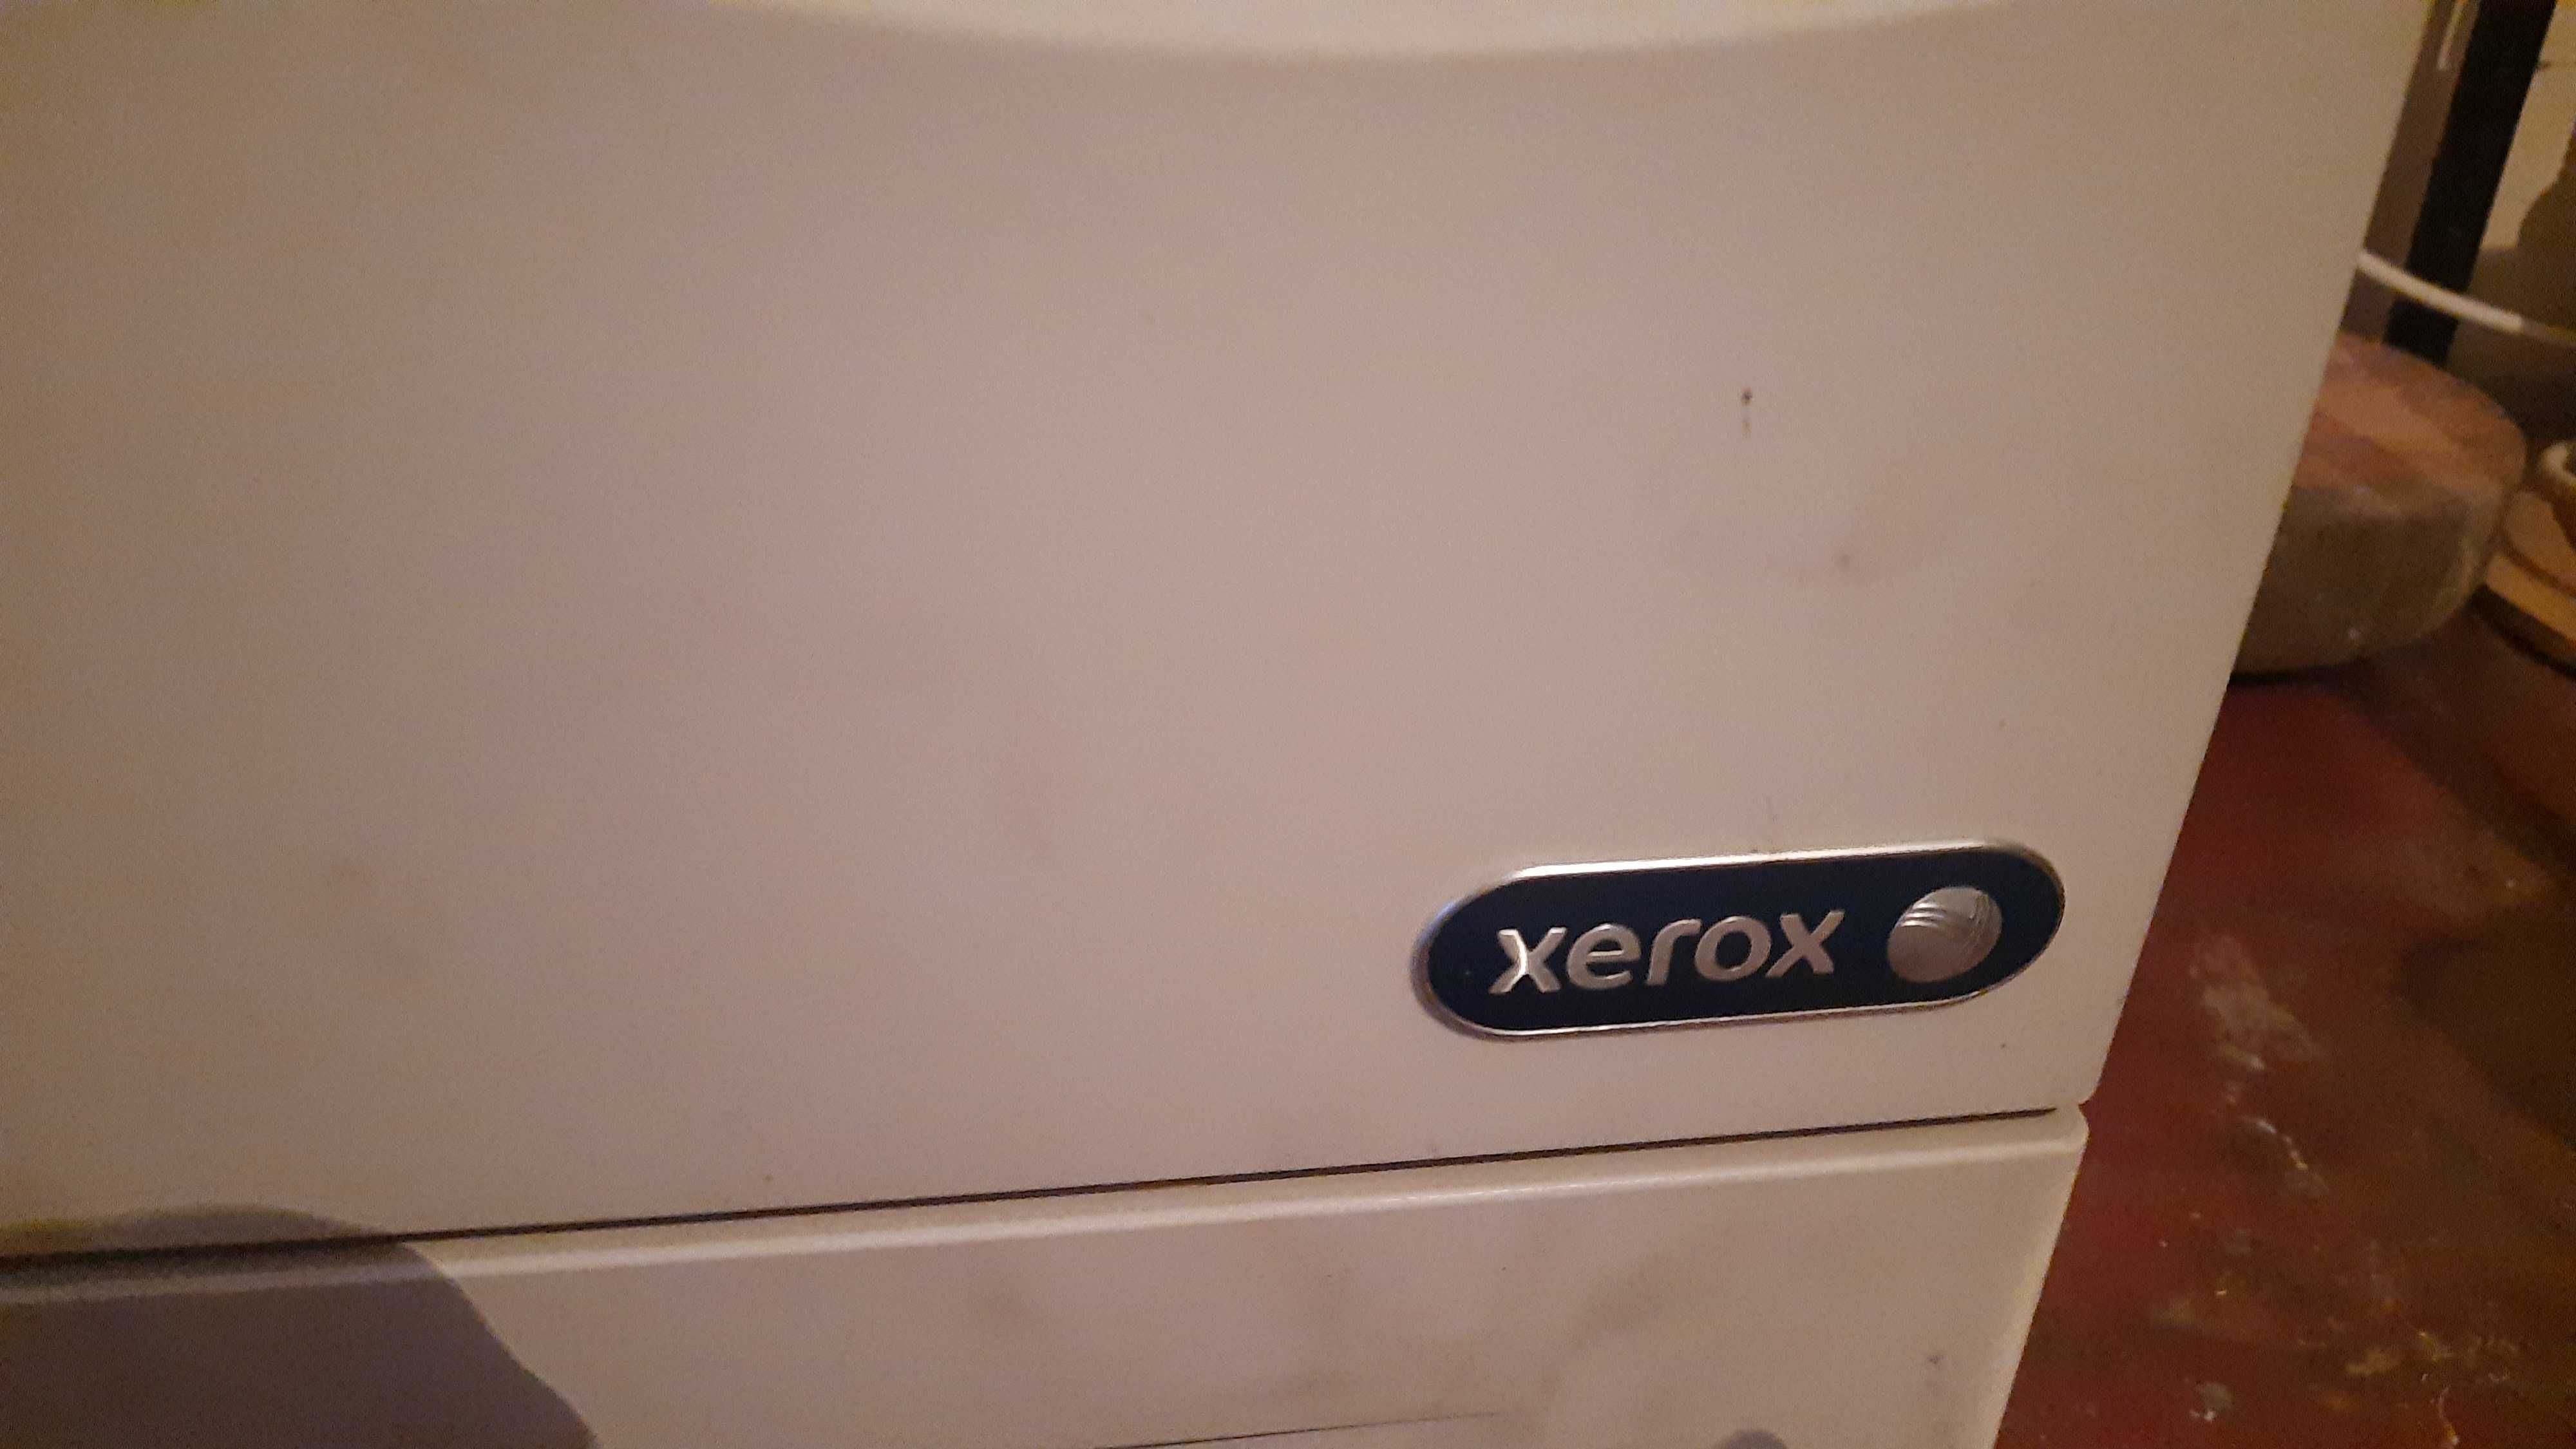 drukarka Xerox work ksero xero